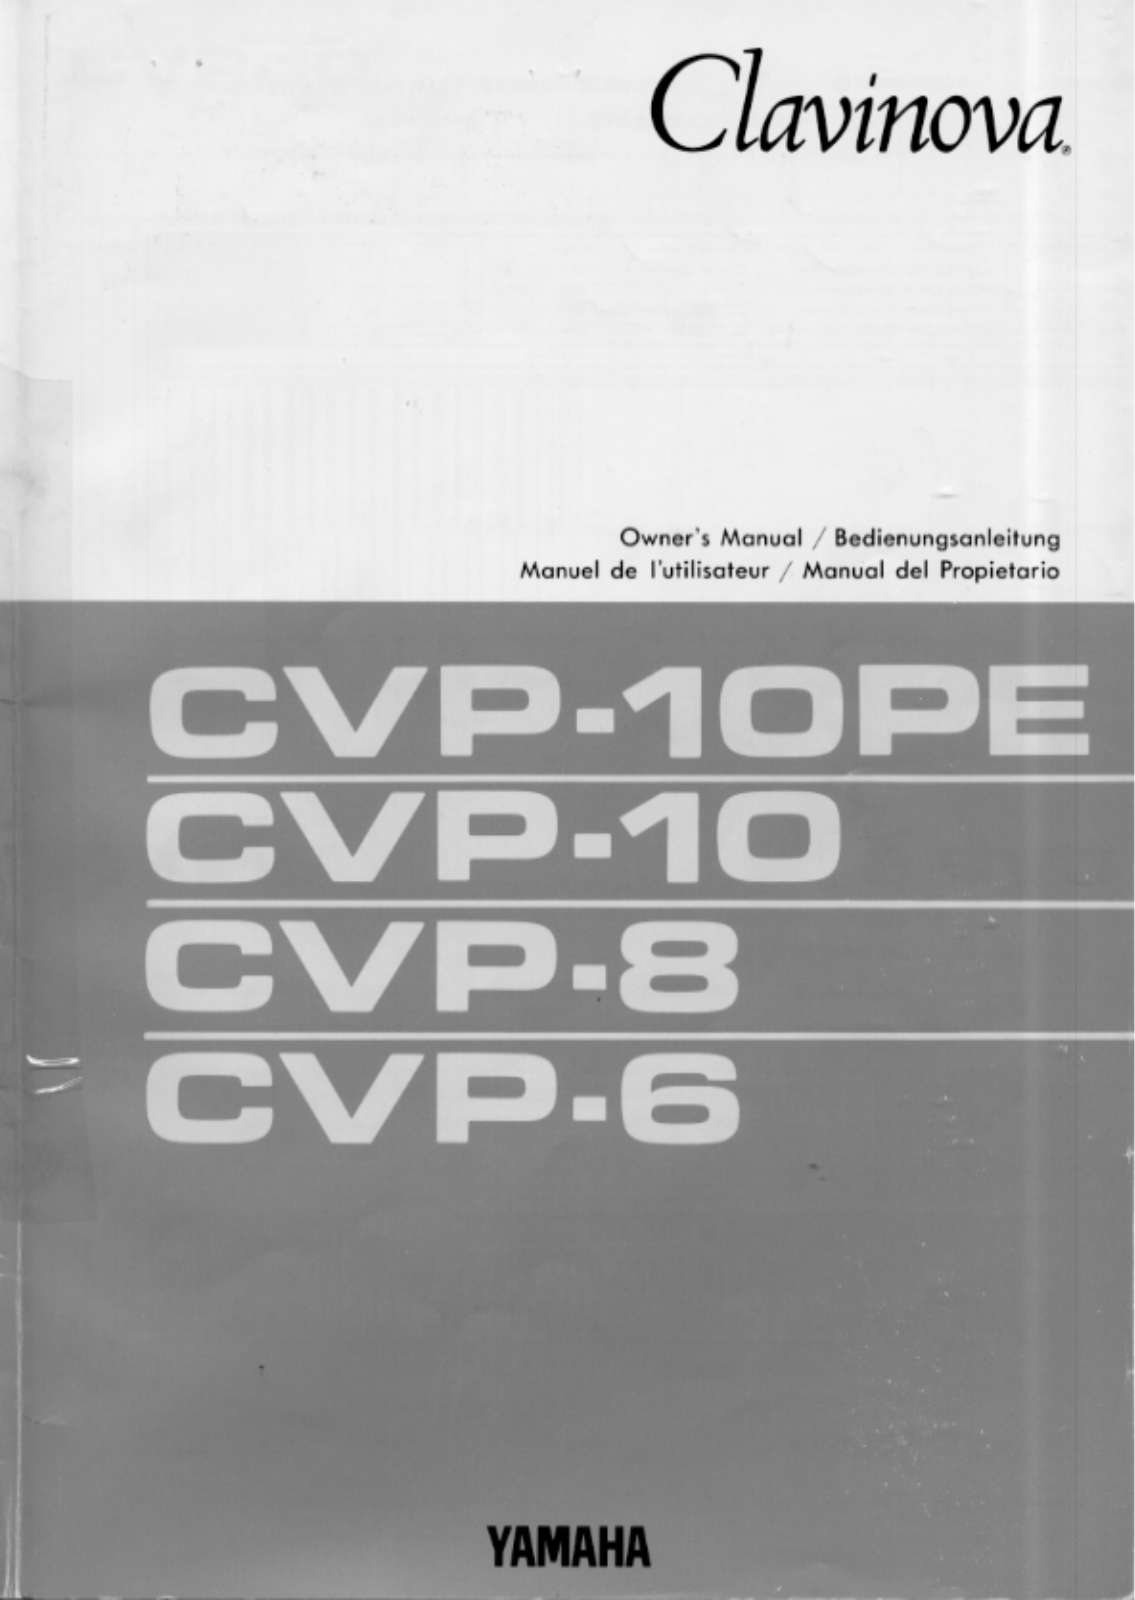 Yamaha CVP-10PE, CVP-8, CVP-6 User Manual